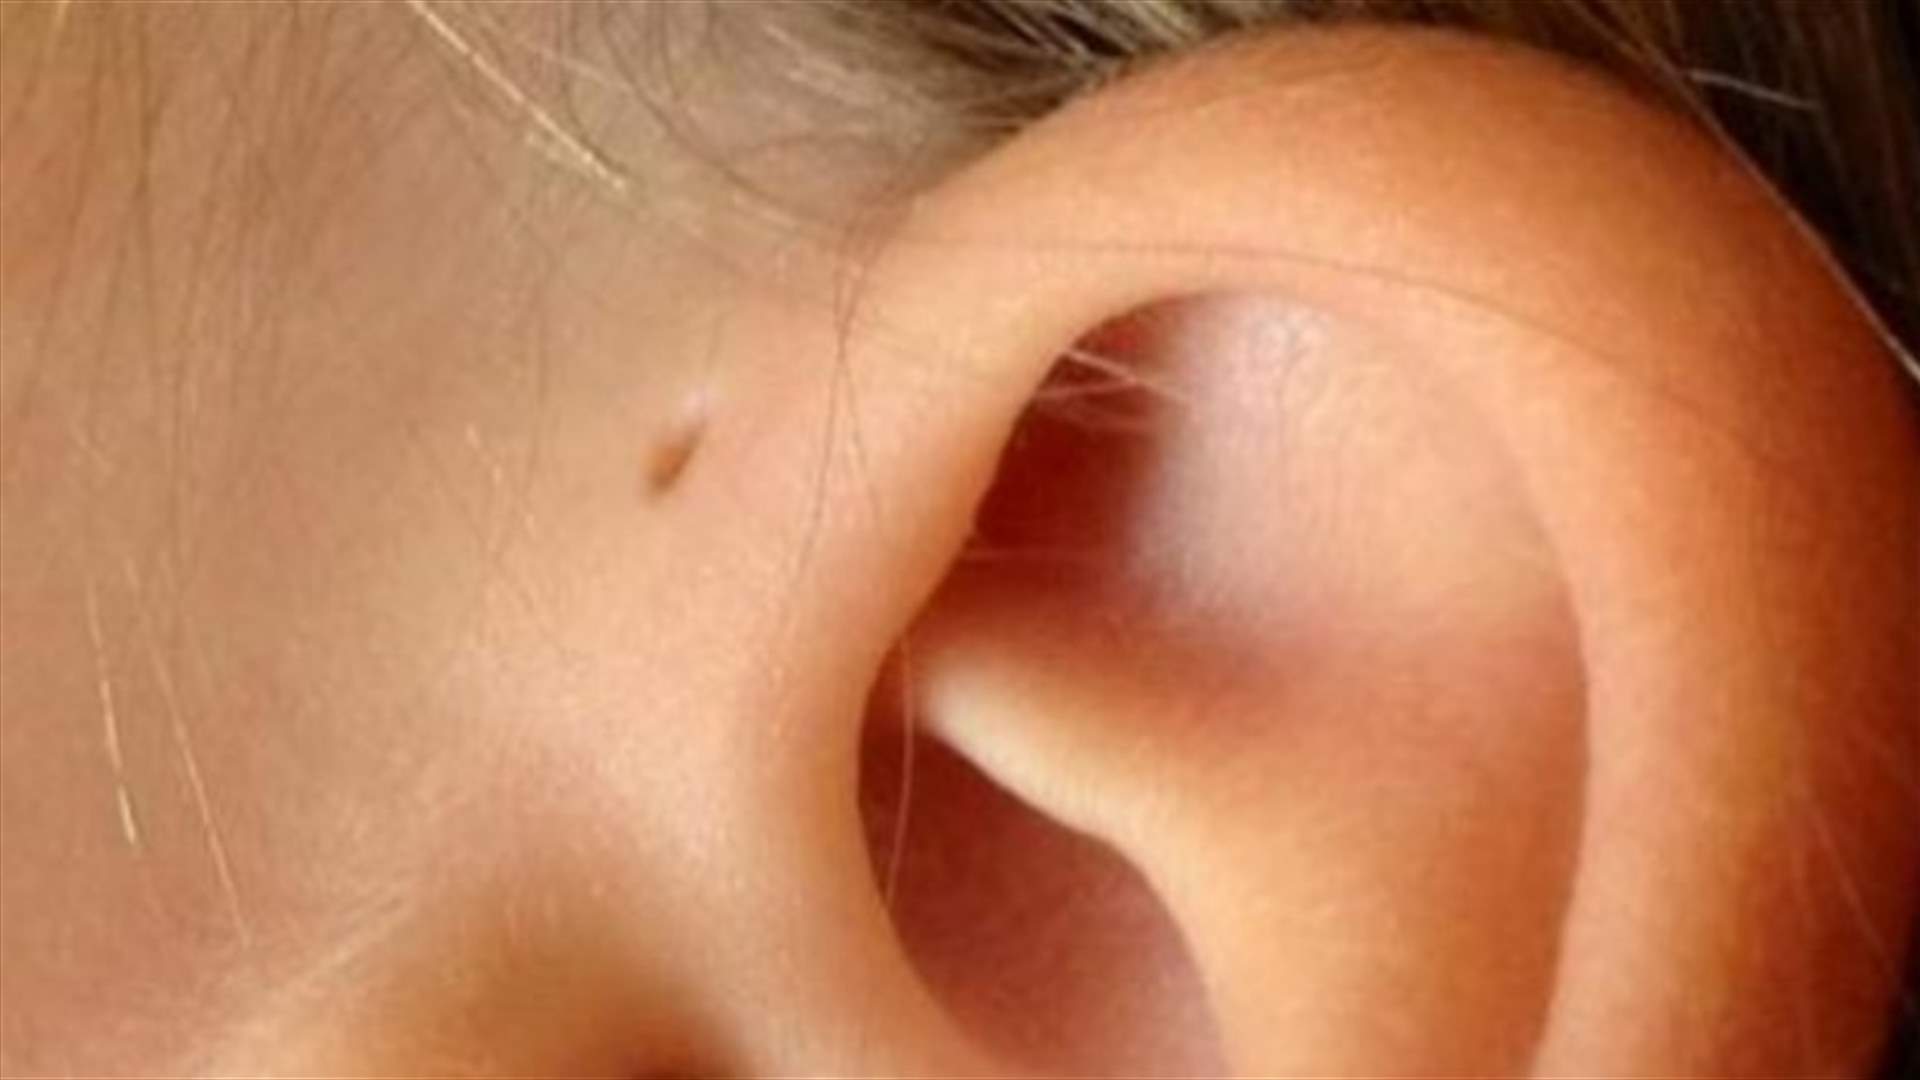 لماذا يوجد ثقب صغير بجانب أذني بعض الأشخاص؟